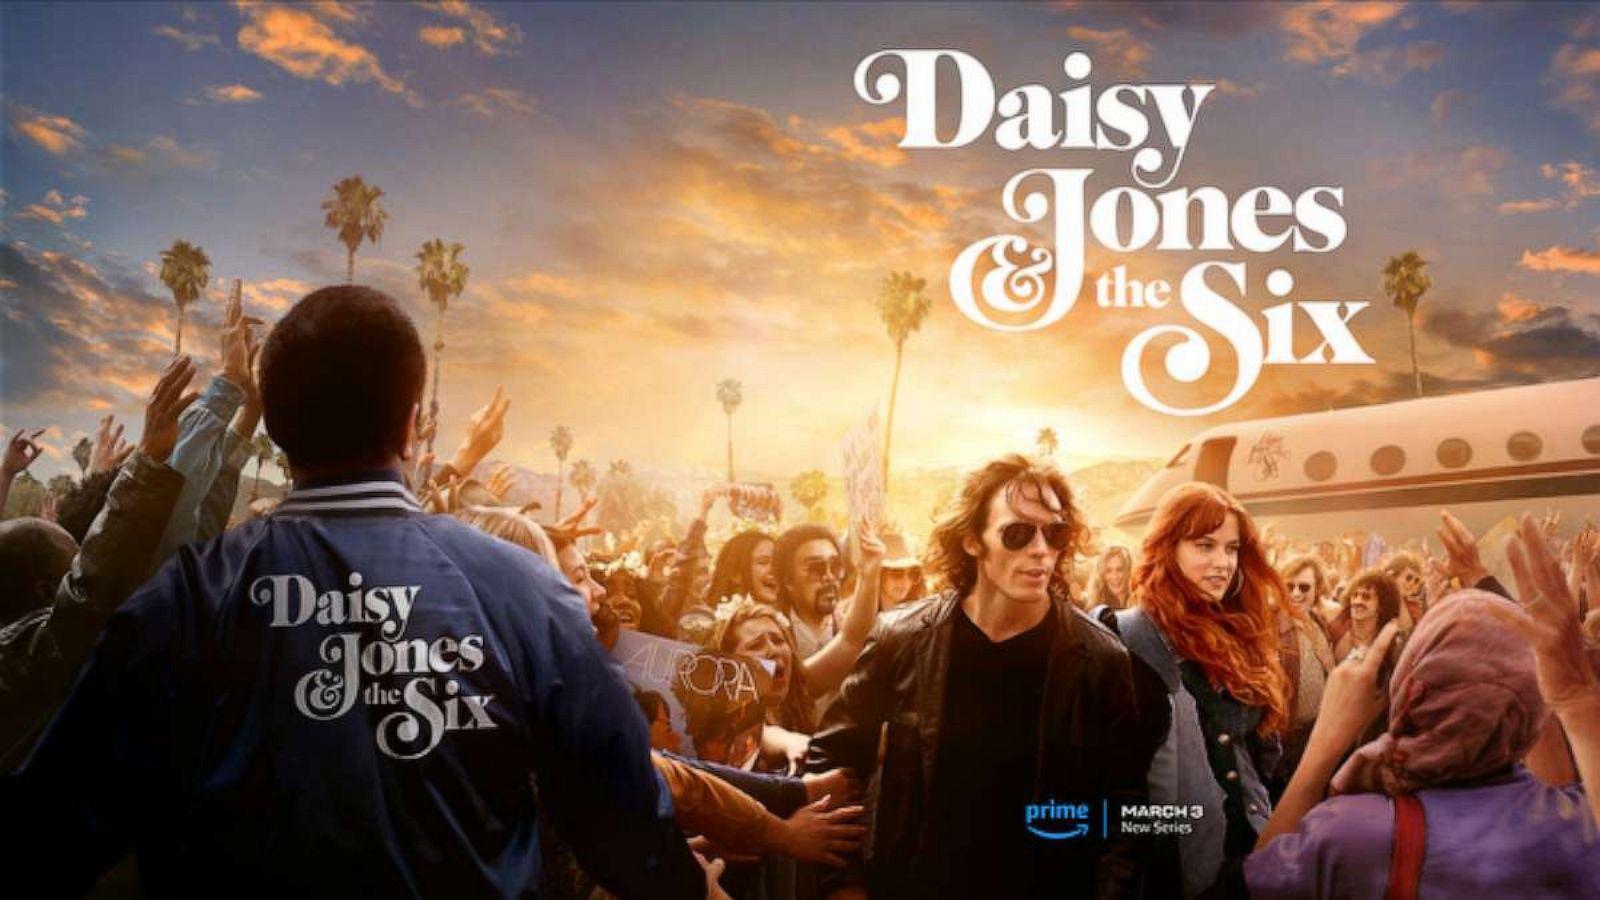 Daisy Jones & The Six Cast: Where You've Seen Riley Keough and Sam Claflin